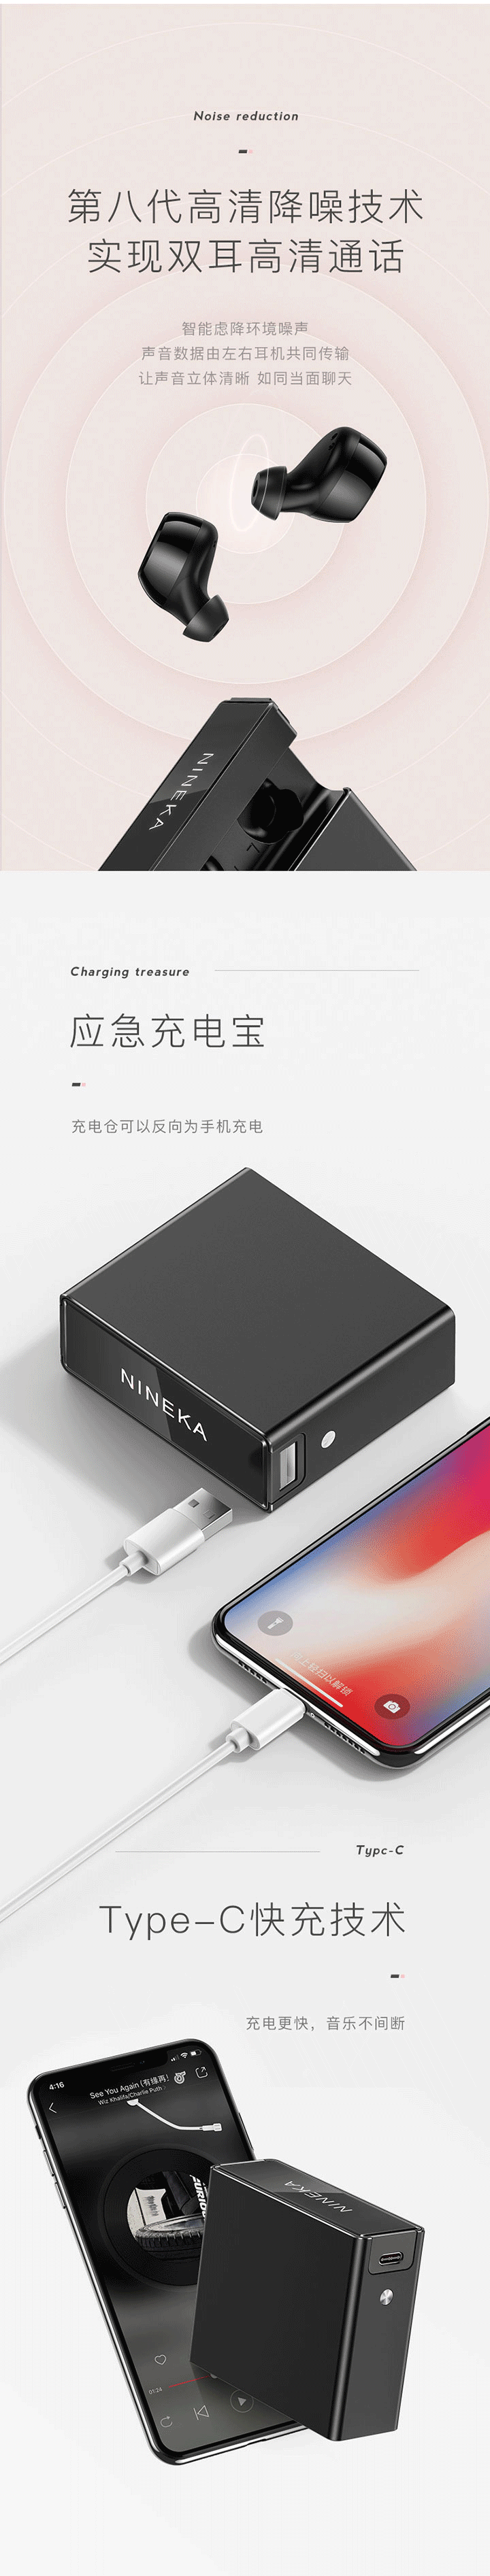 【轻体验】Nineka N2蓝牙耳机免费试用,评测